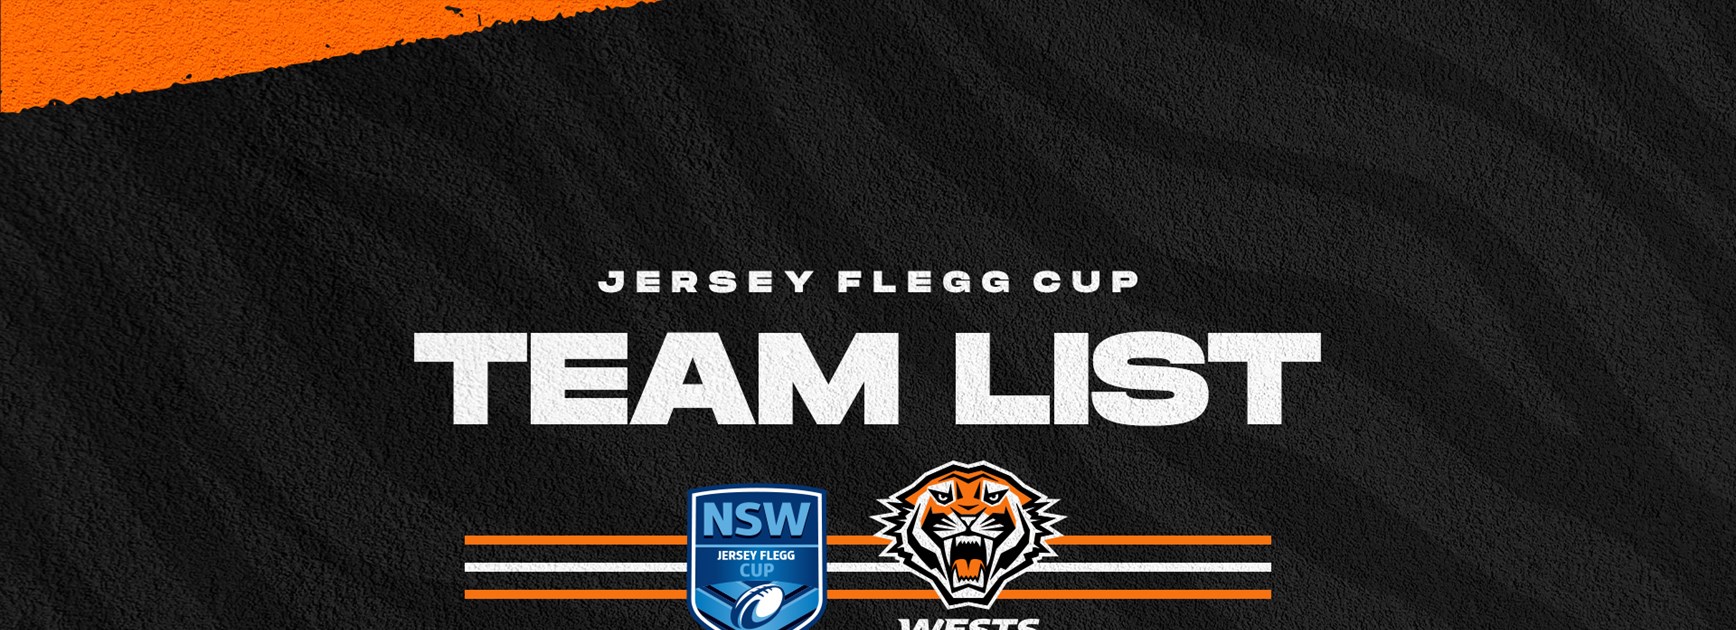 Jersey Flegg Cup Team List: Round 13